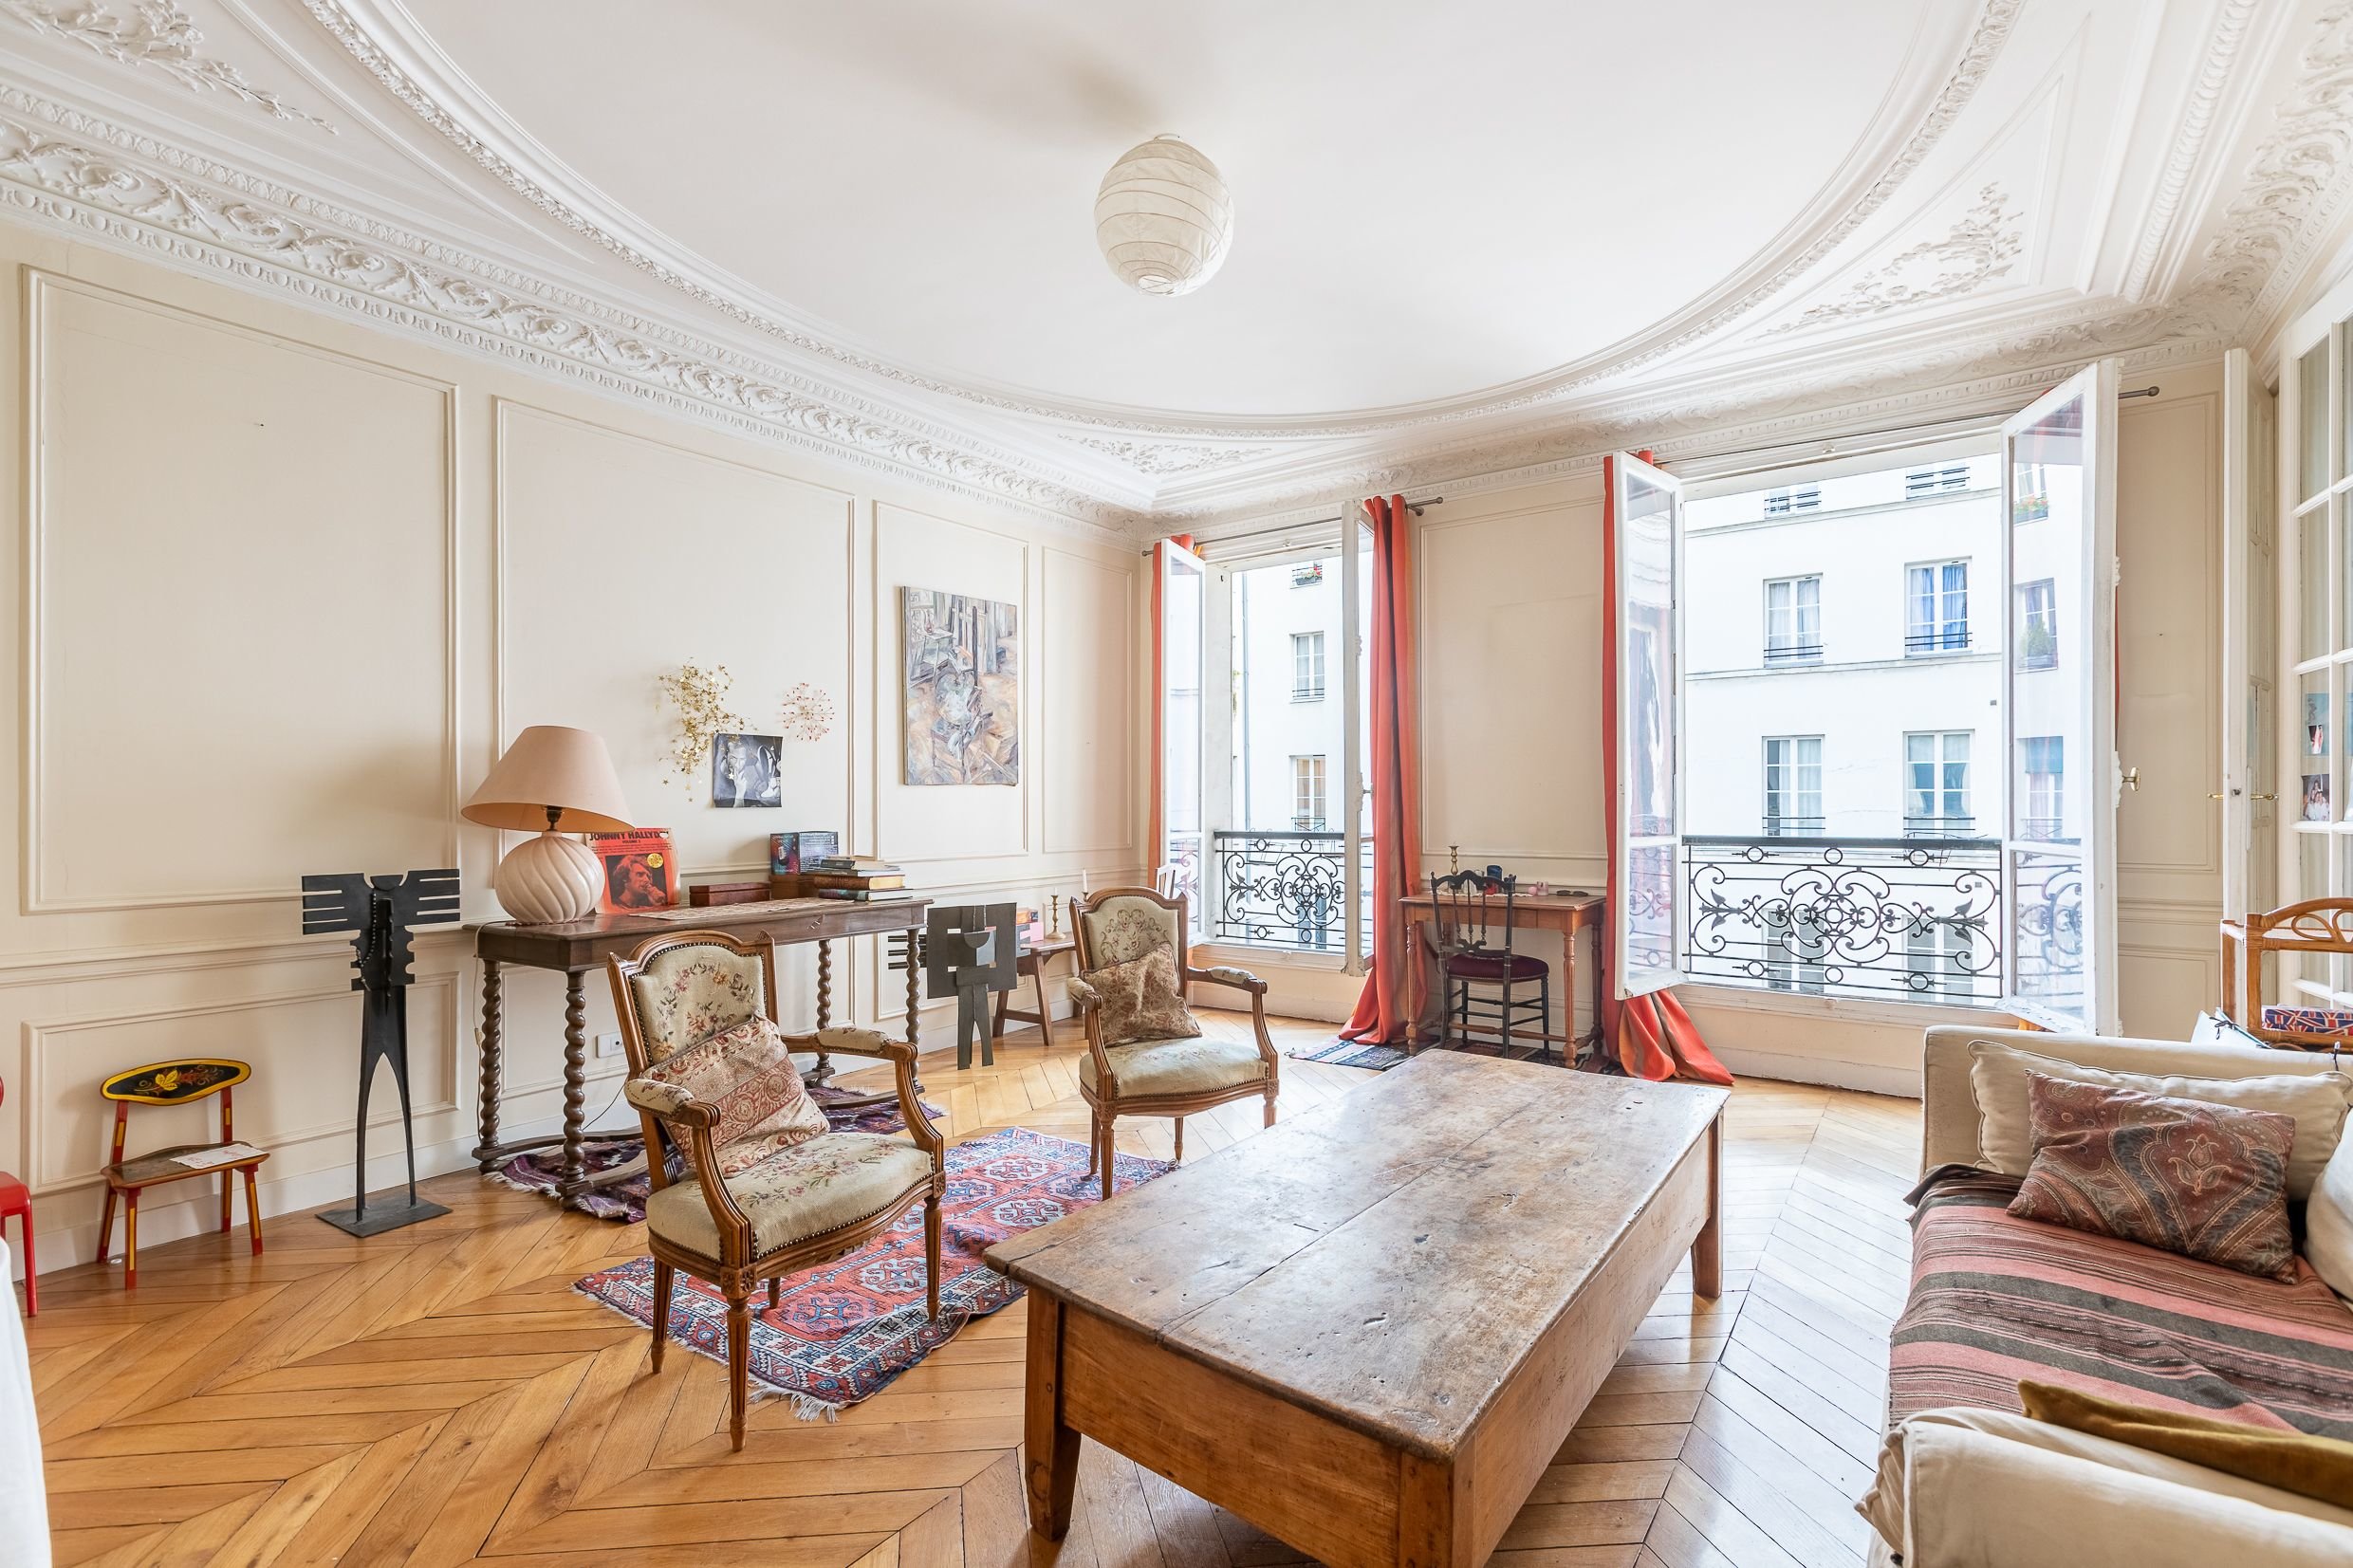 Cet appartement de 150 m2, situé dans le secteur Palais Royal (Ier), a été proposé à 2,36 millions d'euros mais s'est vendu à 2,1 millions d'euros soit 11 % de baisse. Marie Portal